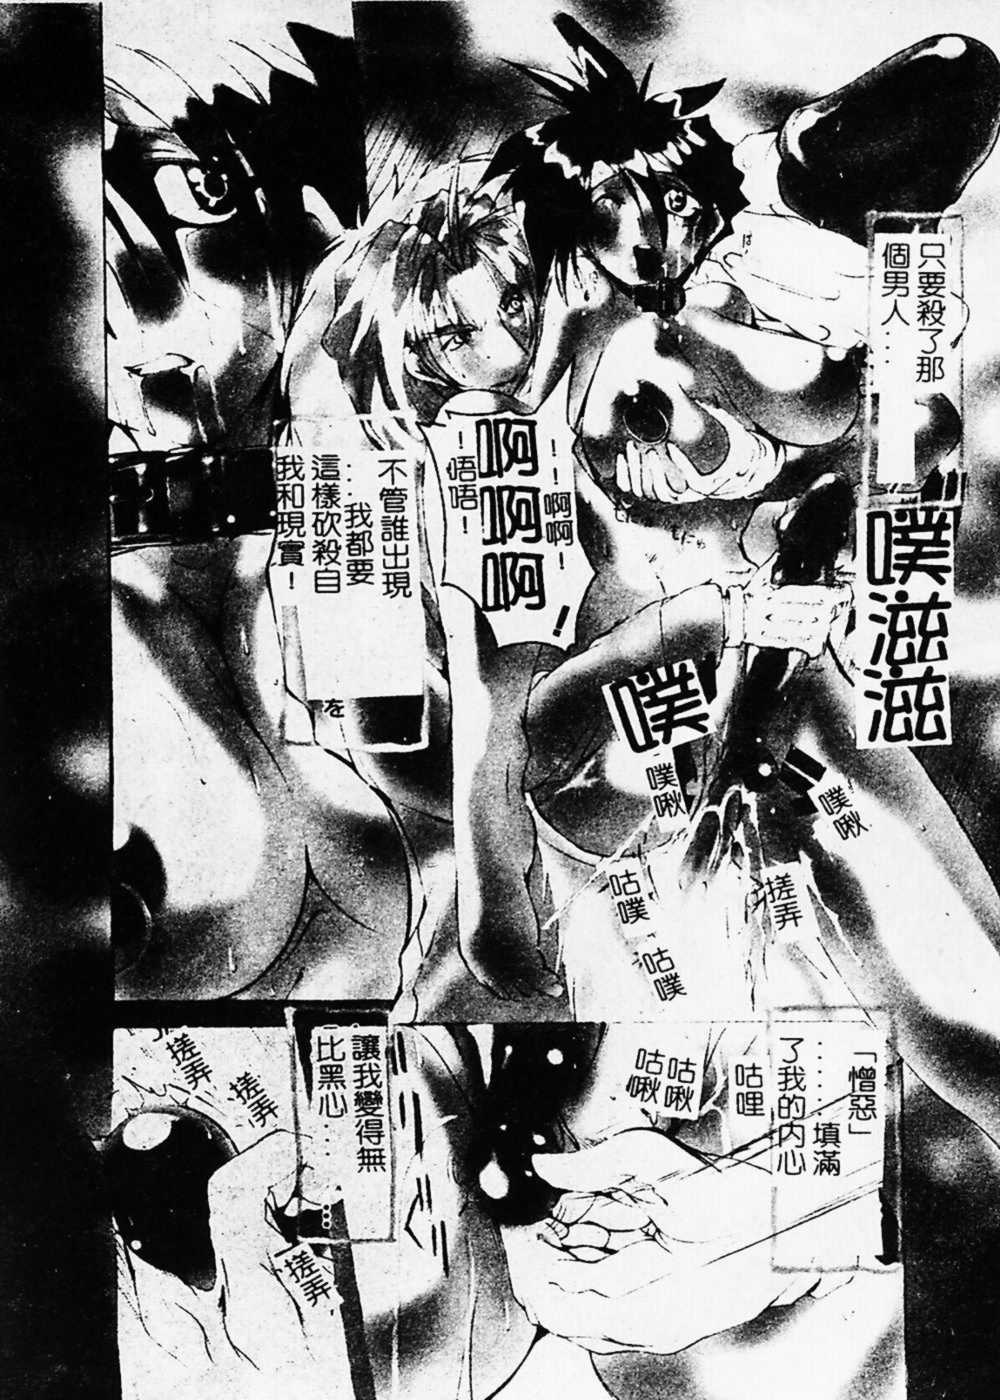 nagitoh mikoshiro - Black Mass 02 (Chinese) [巫代凪遠] 収穫祭2 (中文)